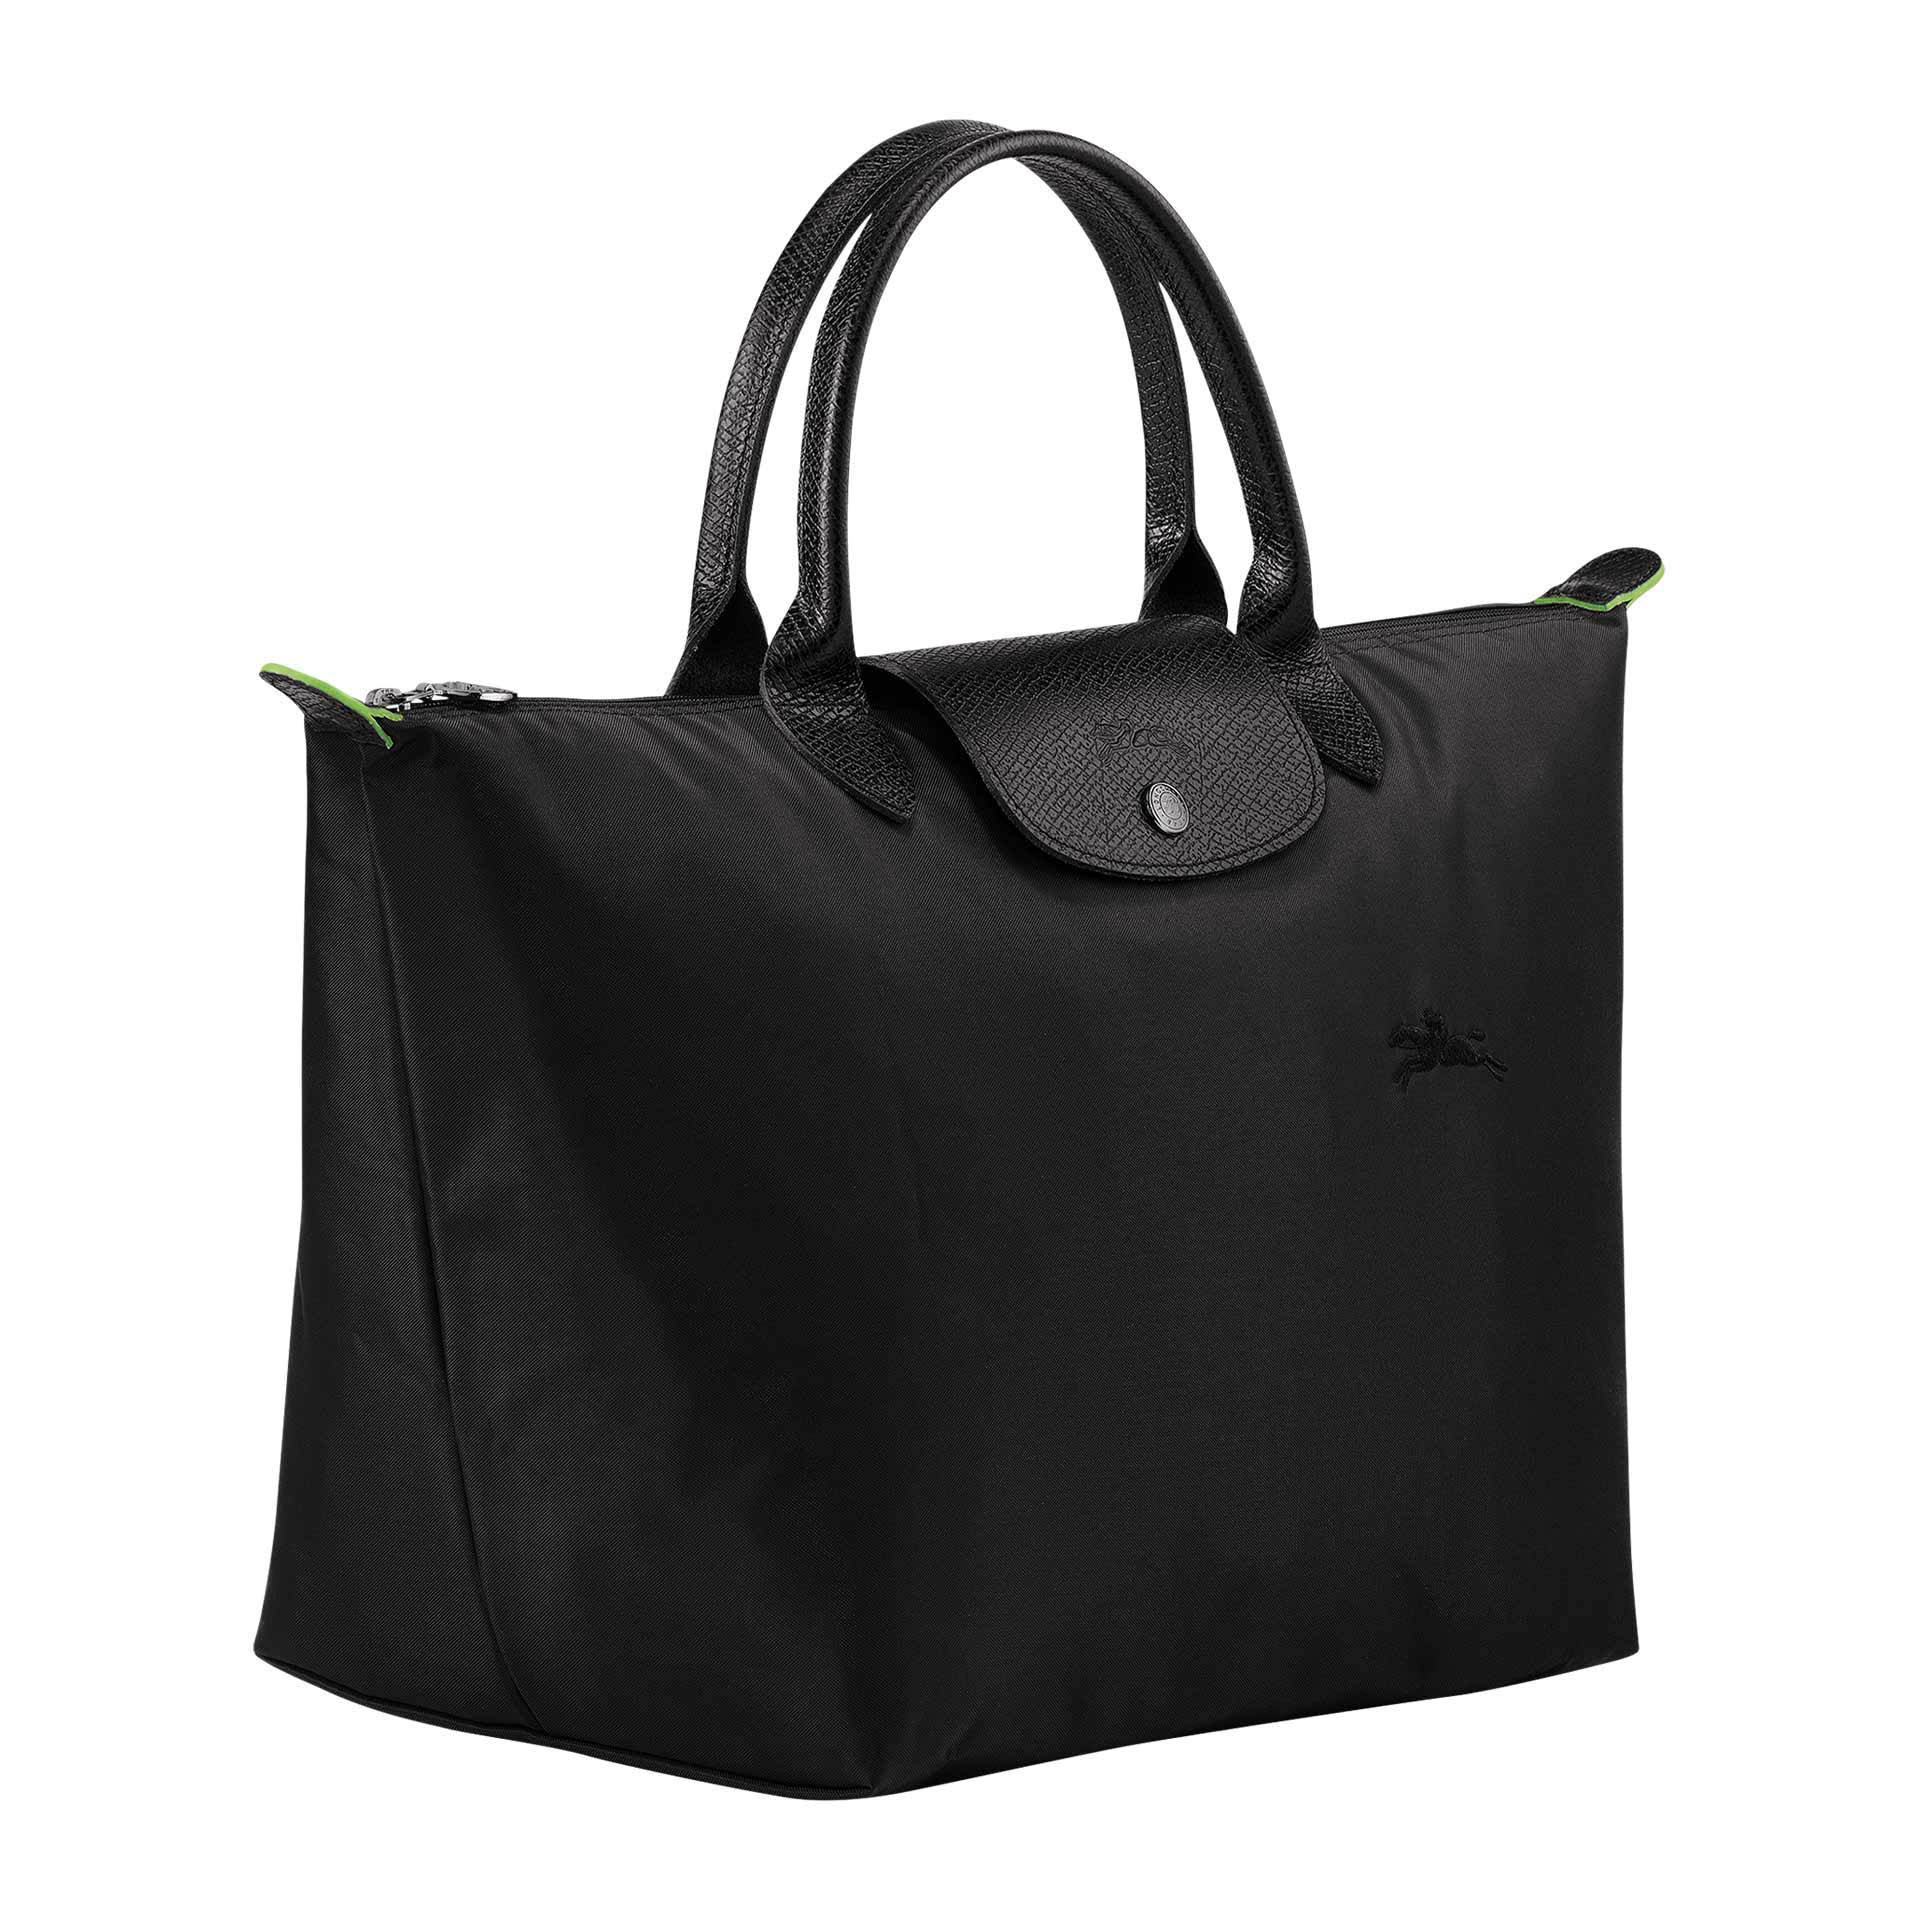 Longchamp Le Pliage Green Handtasche M black